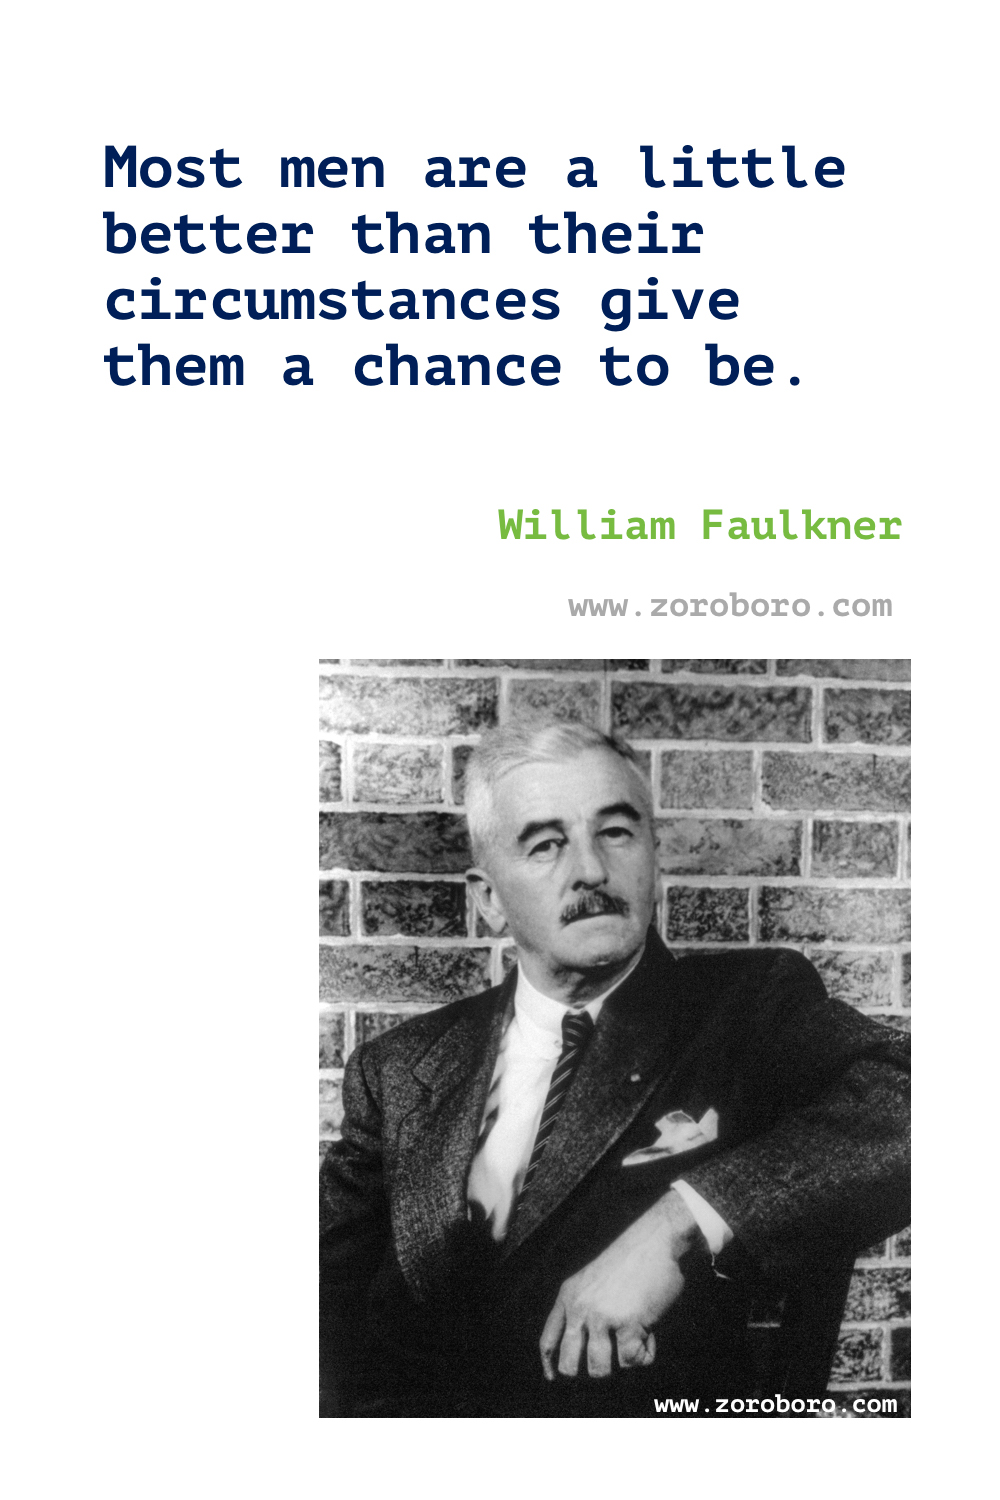 William Faulkner Quotes. William Faulkner Books Quotes. William Faulkner Writing.William Faulkner The sound and the fury Quotes. William Faulkner Poems. William Faulkner Quotes.